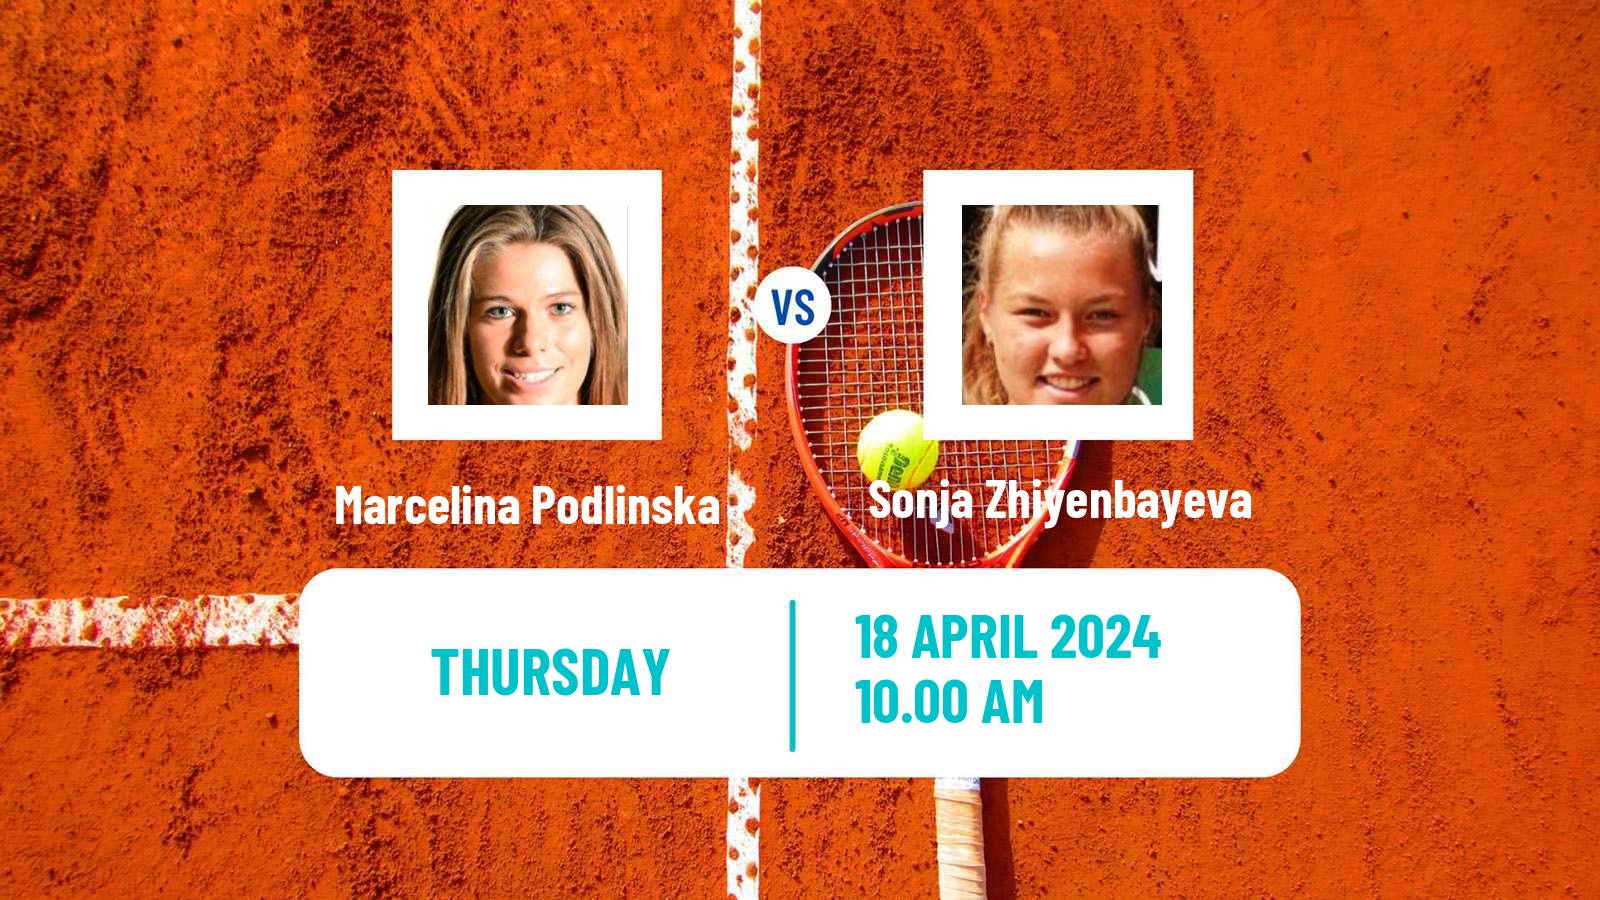 Tennis ITF W15 Antalya 10 Women Marcelina Podlinska - Sonja Zhiyenbayeva